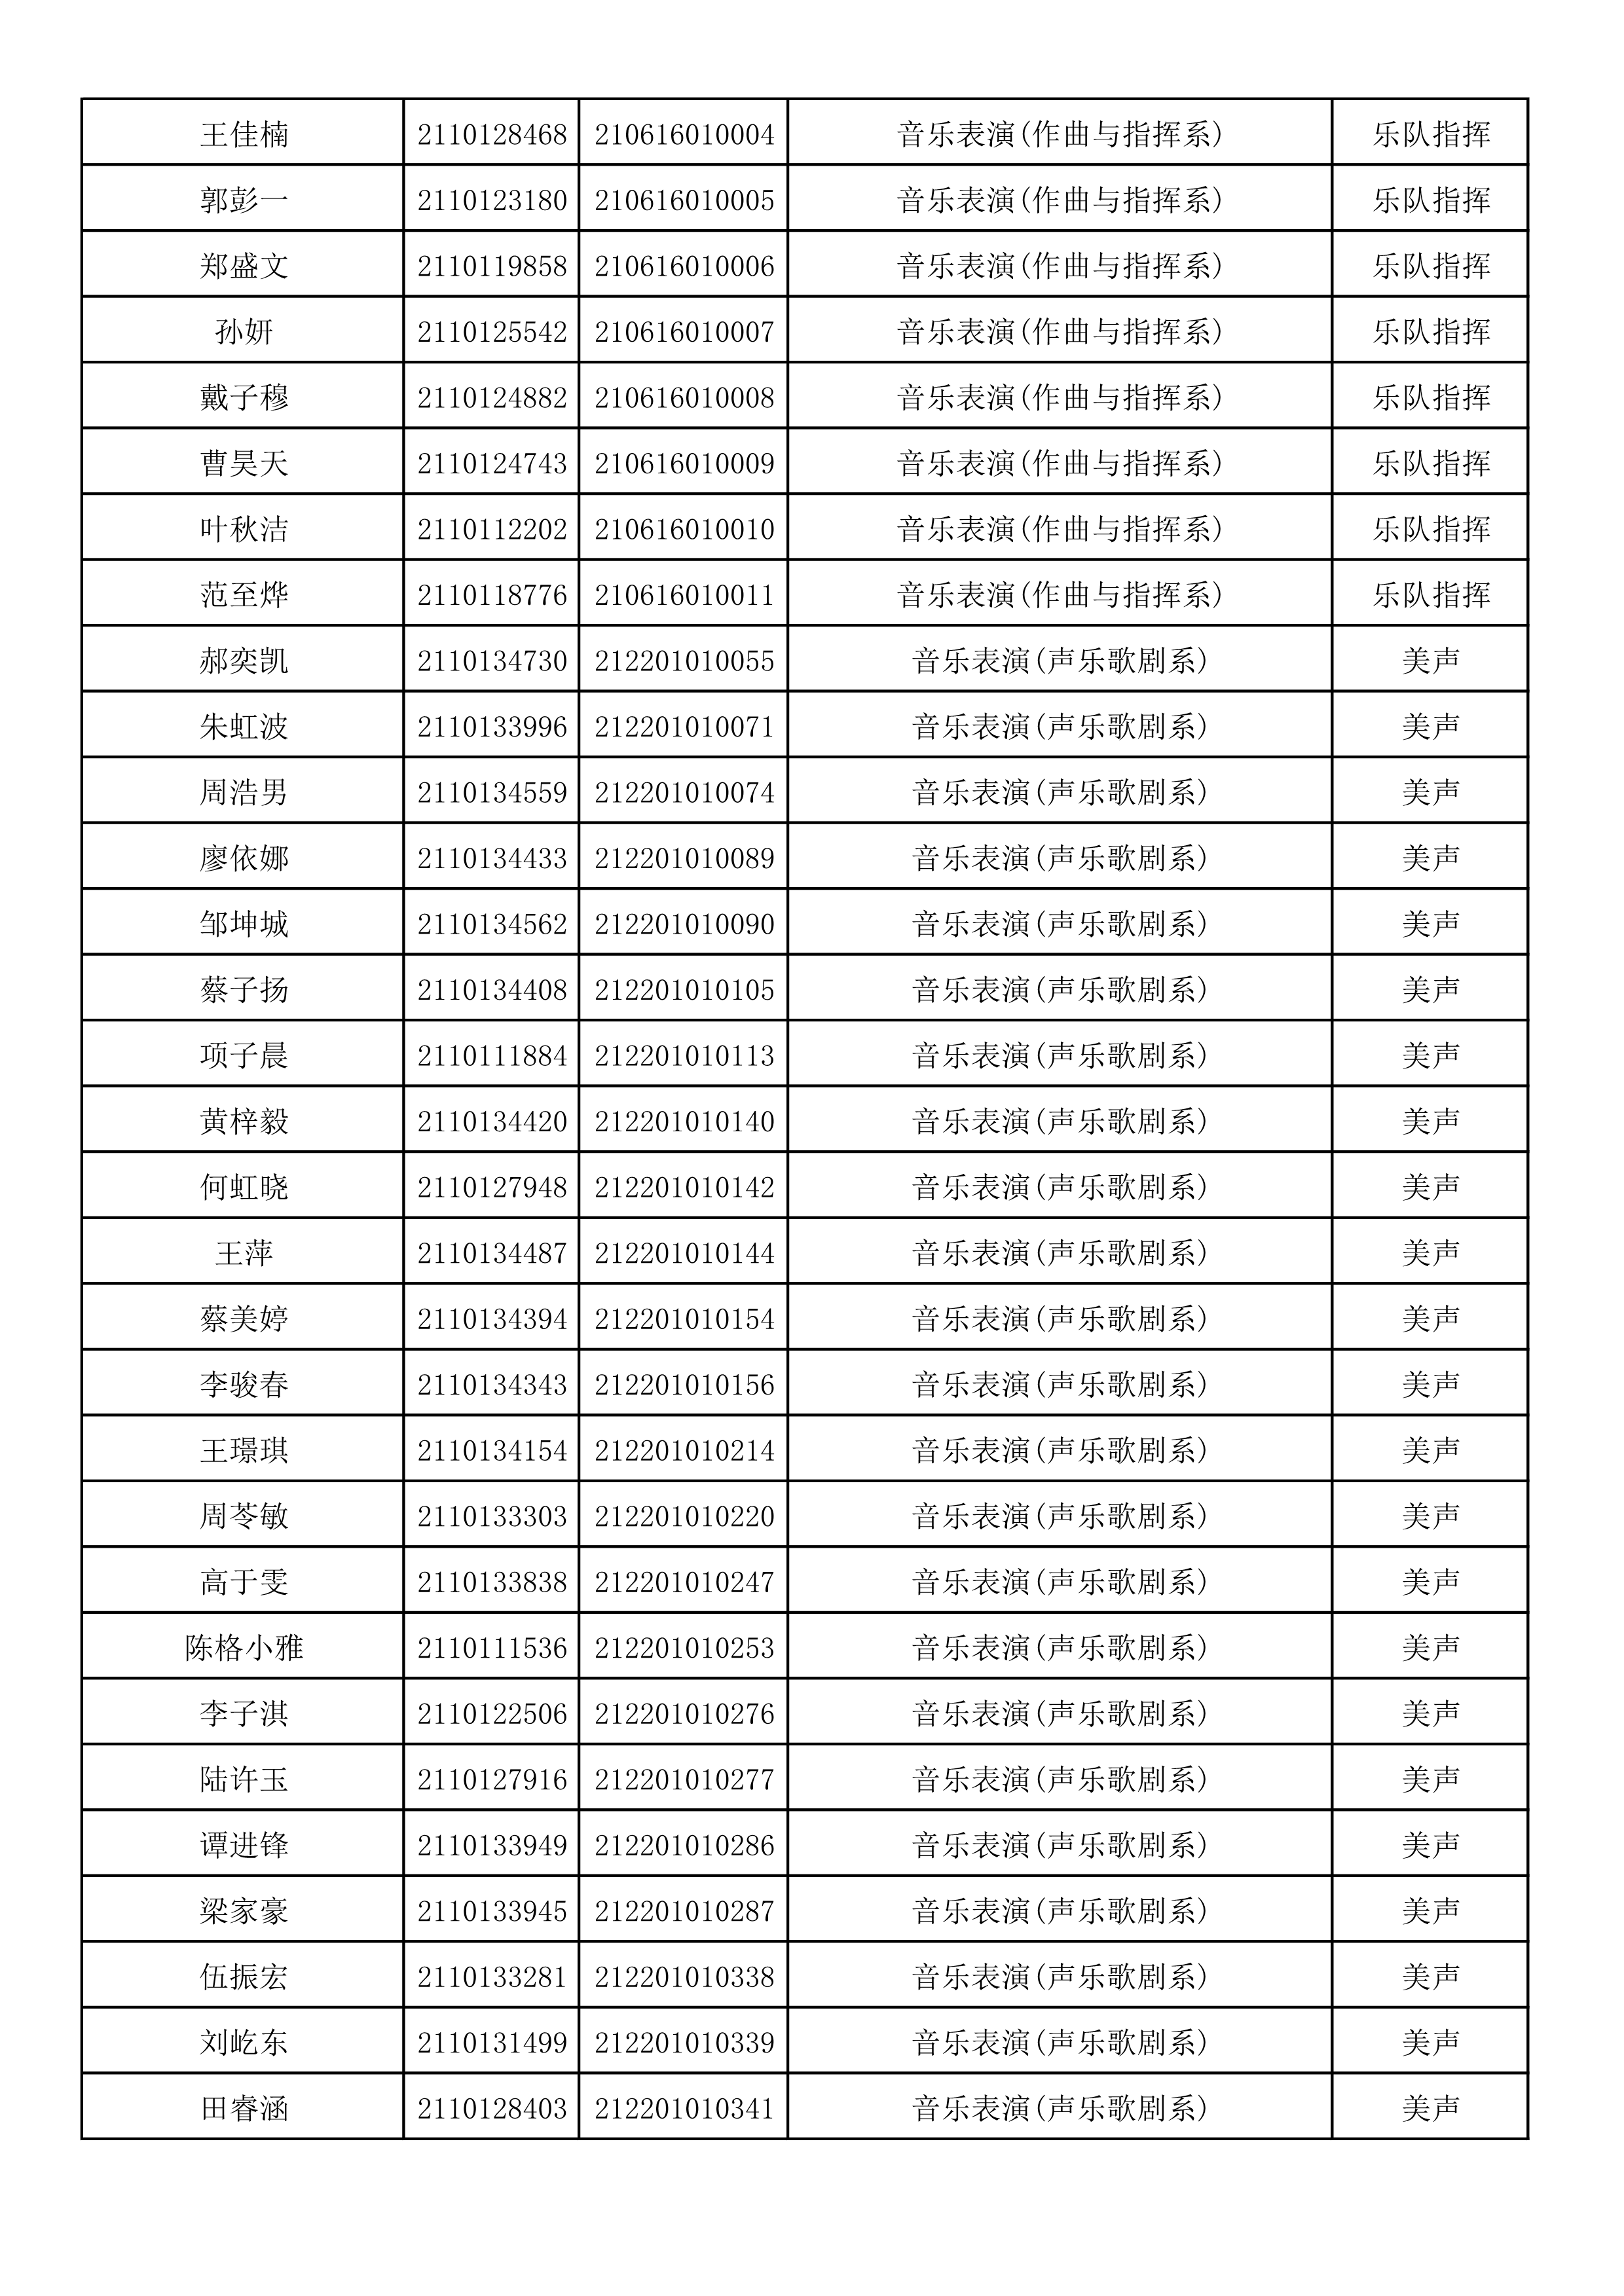 附件2：浙江音乐学院2021年本科招生专业校考初试合格考生名单_28.png